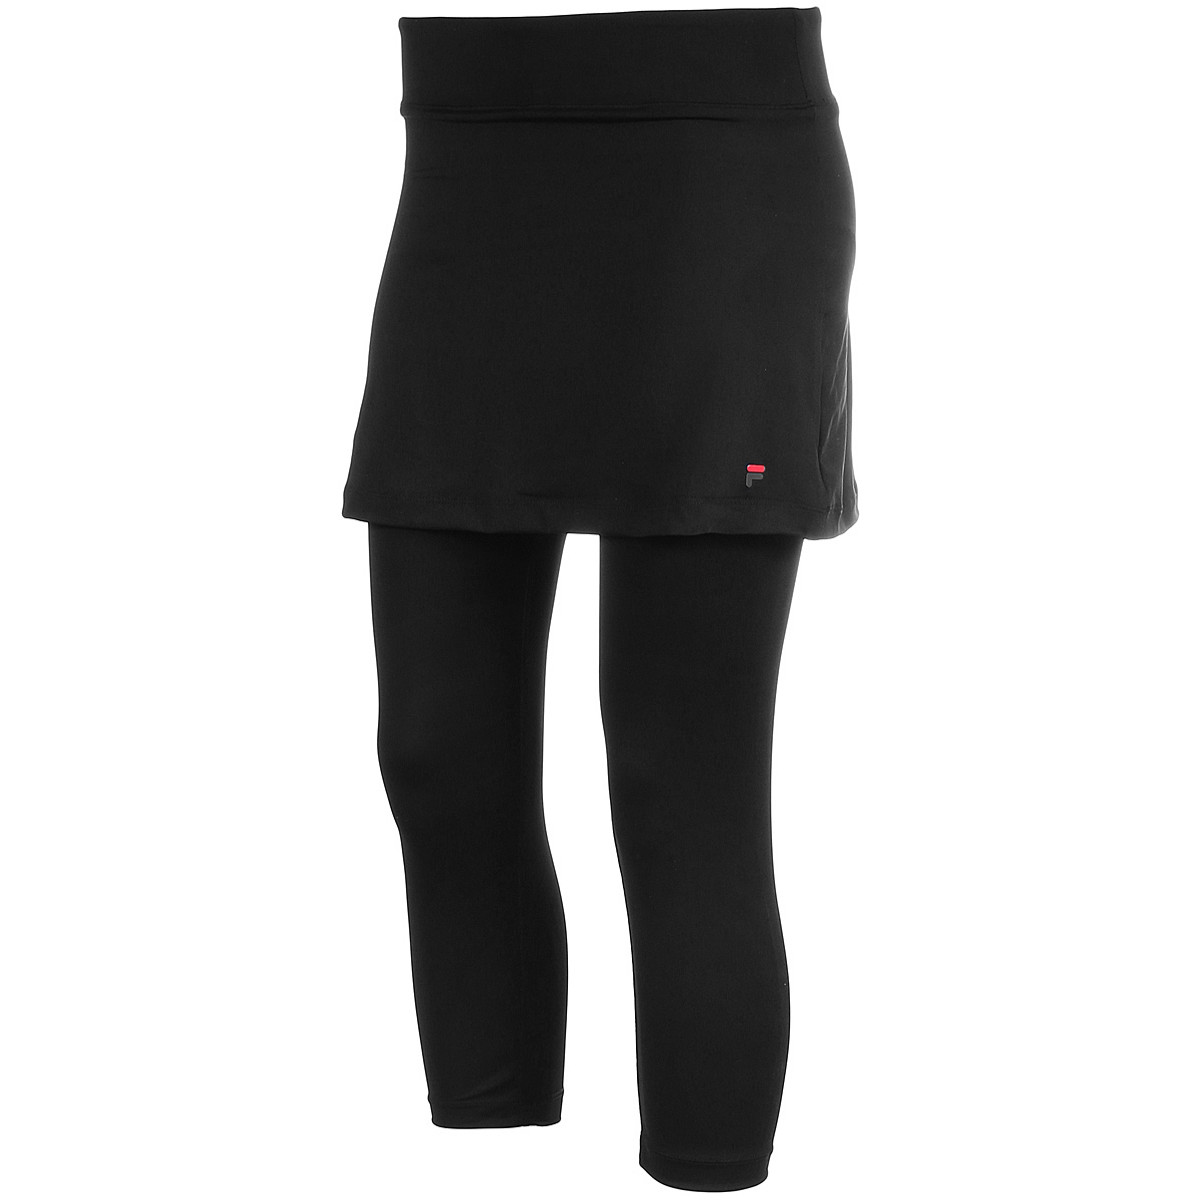 Update 231+ tennis skirt with capri leggings best